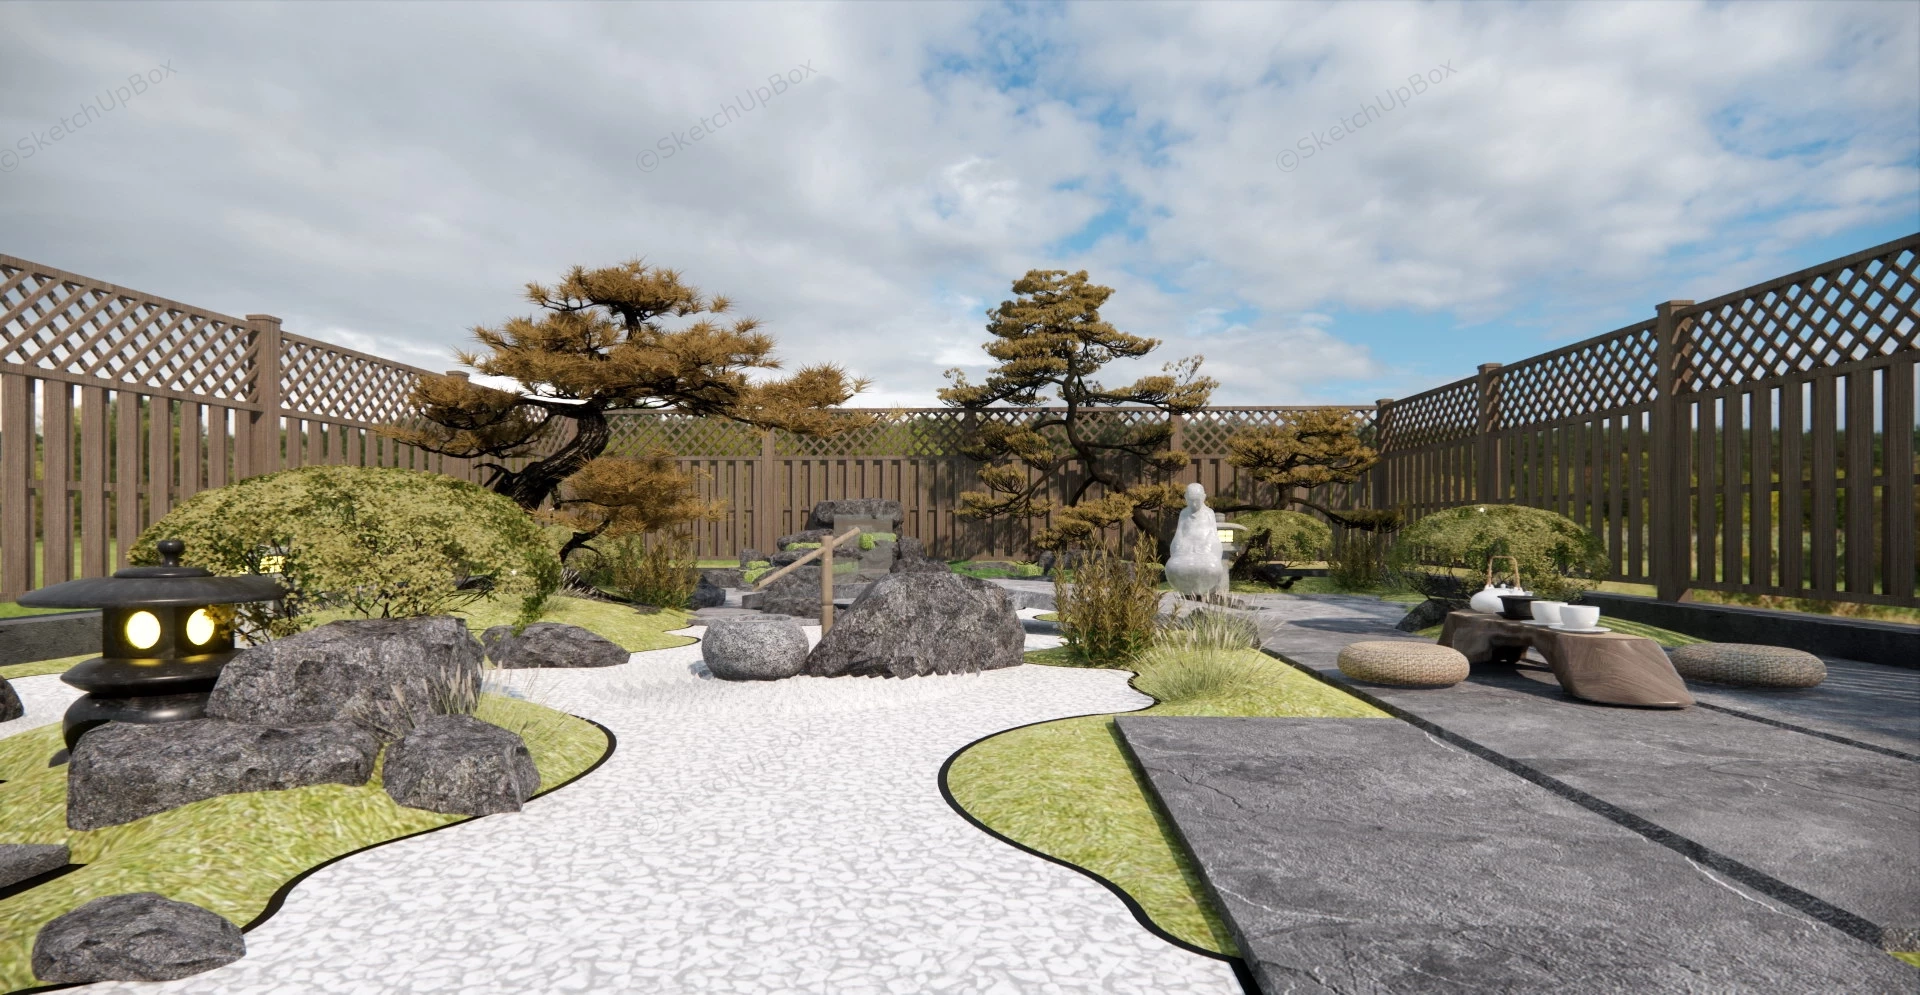 BackYard Zen Garden Design sketchup model preview - SketchupBox